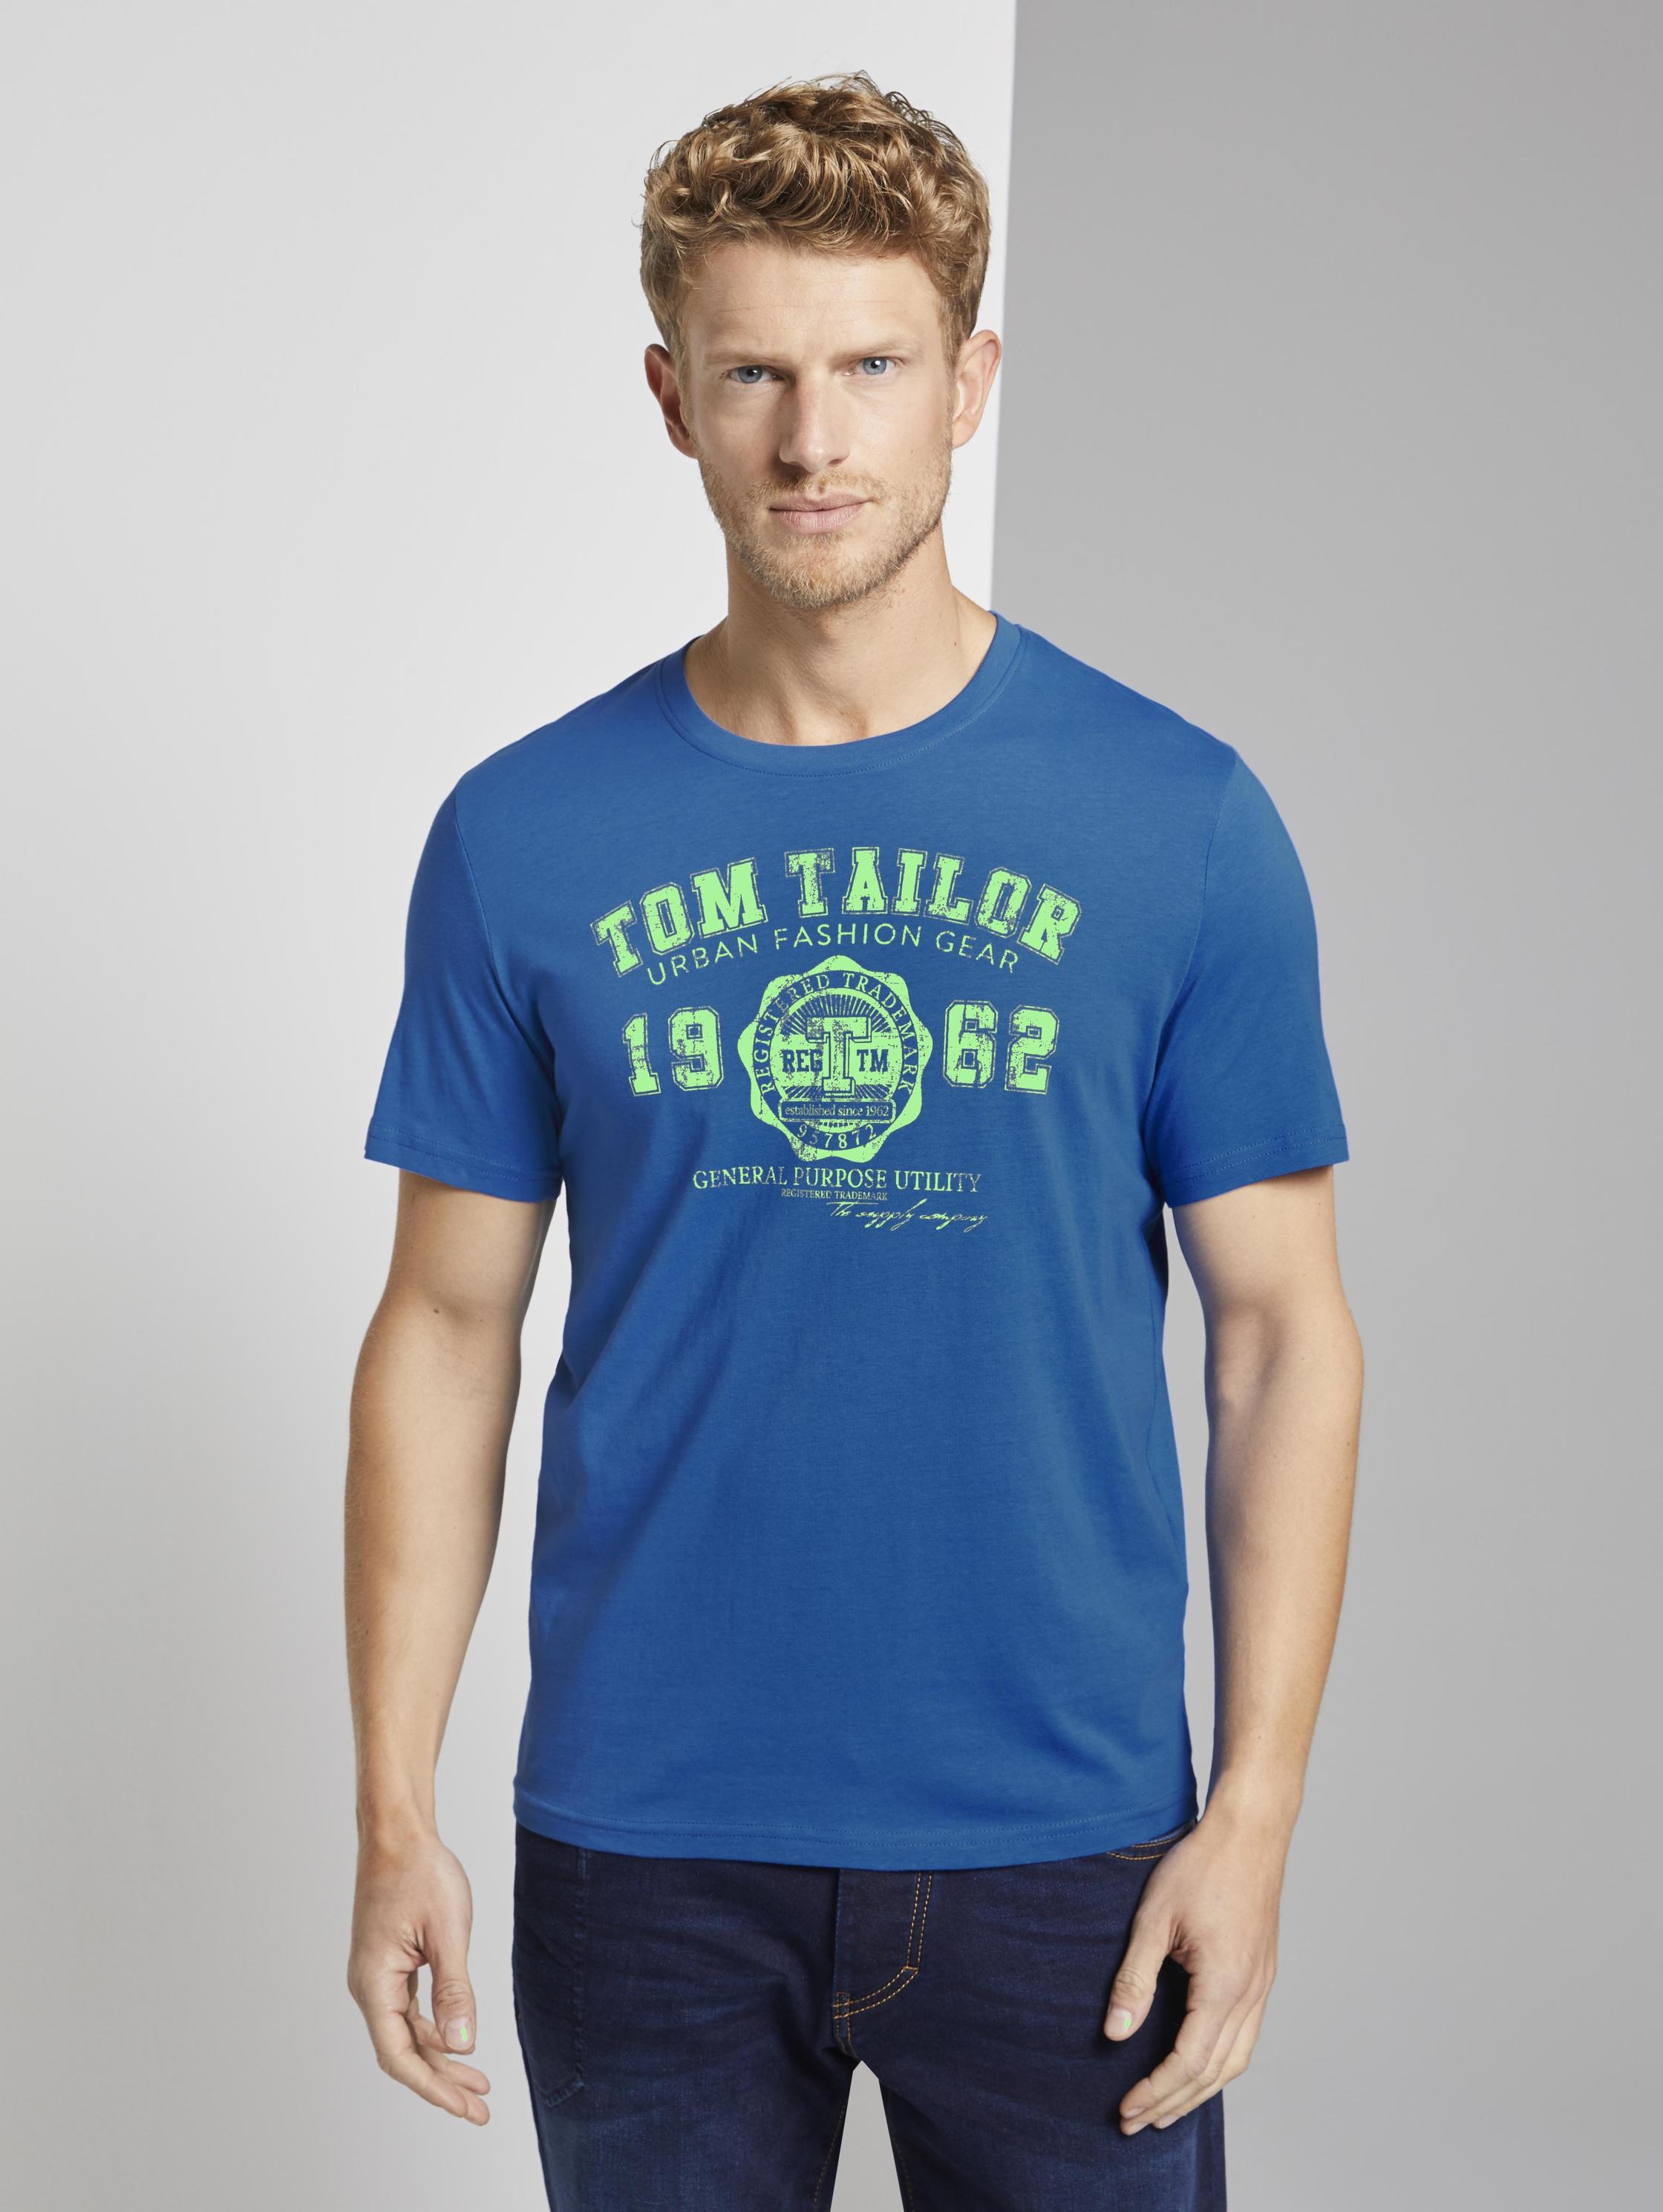 Том тейлор чей. Футболка Tom Tailor мужская голубая. Футболка Tom Tailor 1 мужская. Футболка том Тейлор мужская. Tom Tailor одежда мужская футболка.